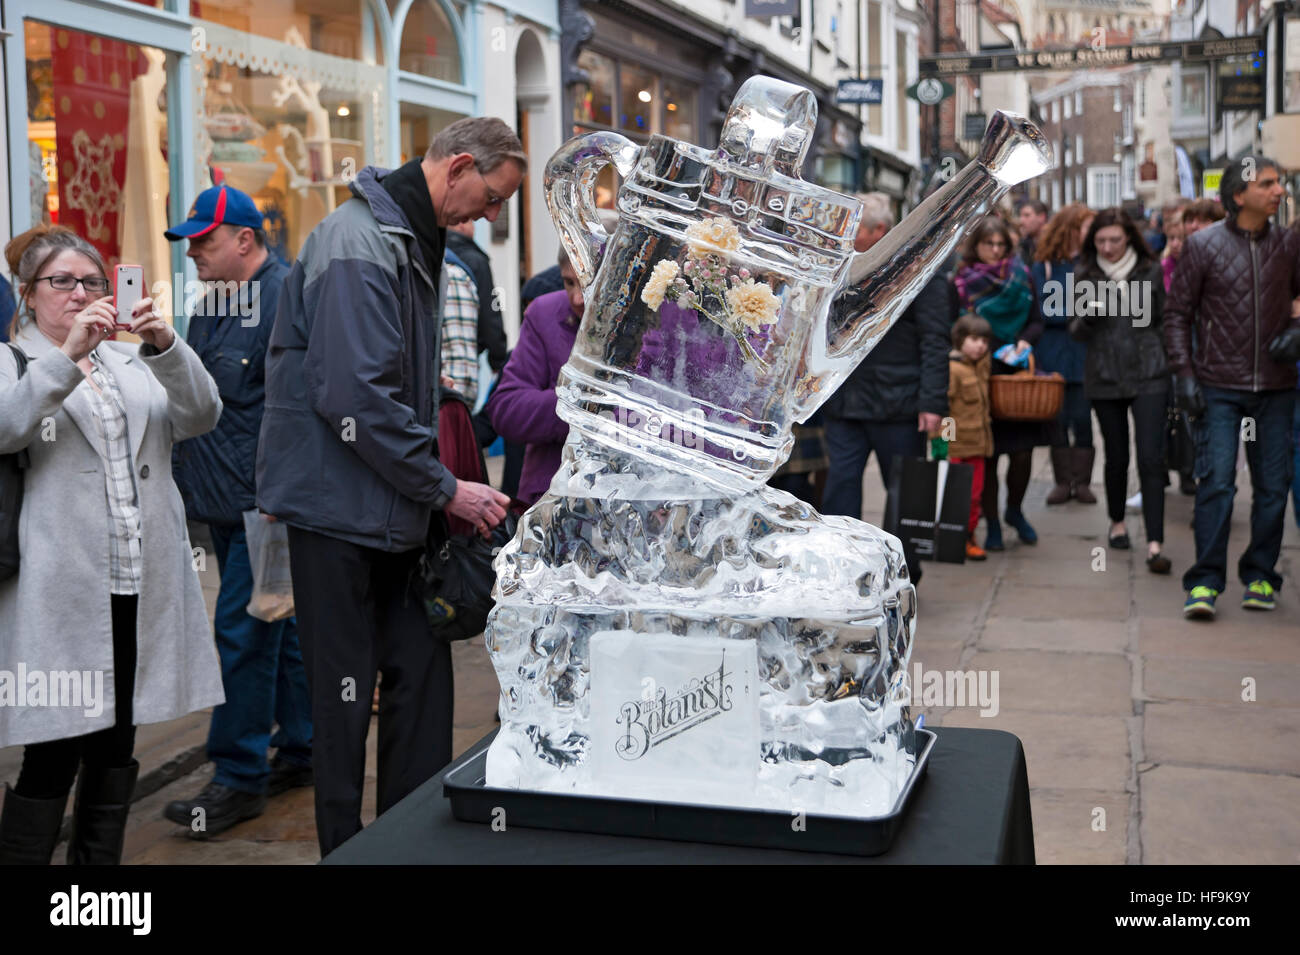 Visiteurs visiteurs touristes et sculpture sur glace d'un arrosoir Sur la piste de glace en hiver York North Yorkshire Angleterre Royaume-Uni Grande-Bretagne Banque D'Images